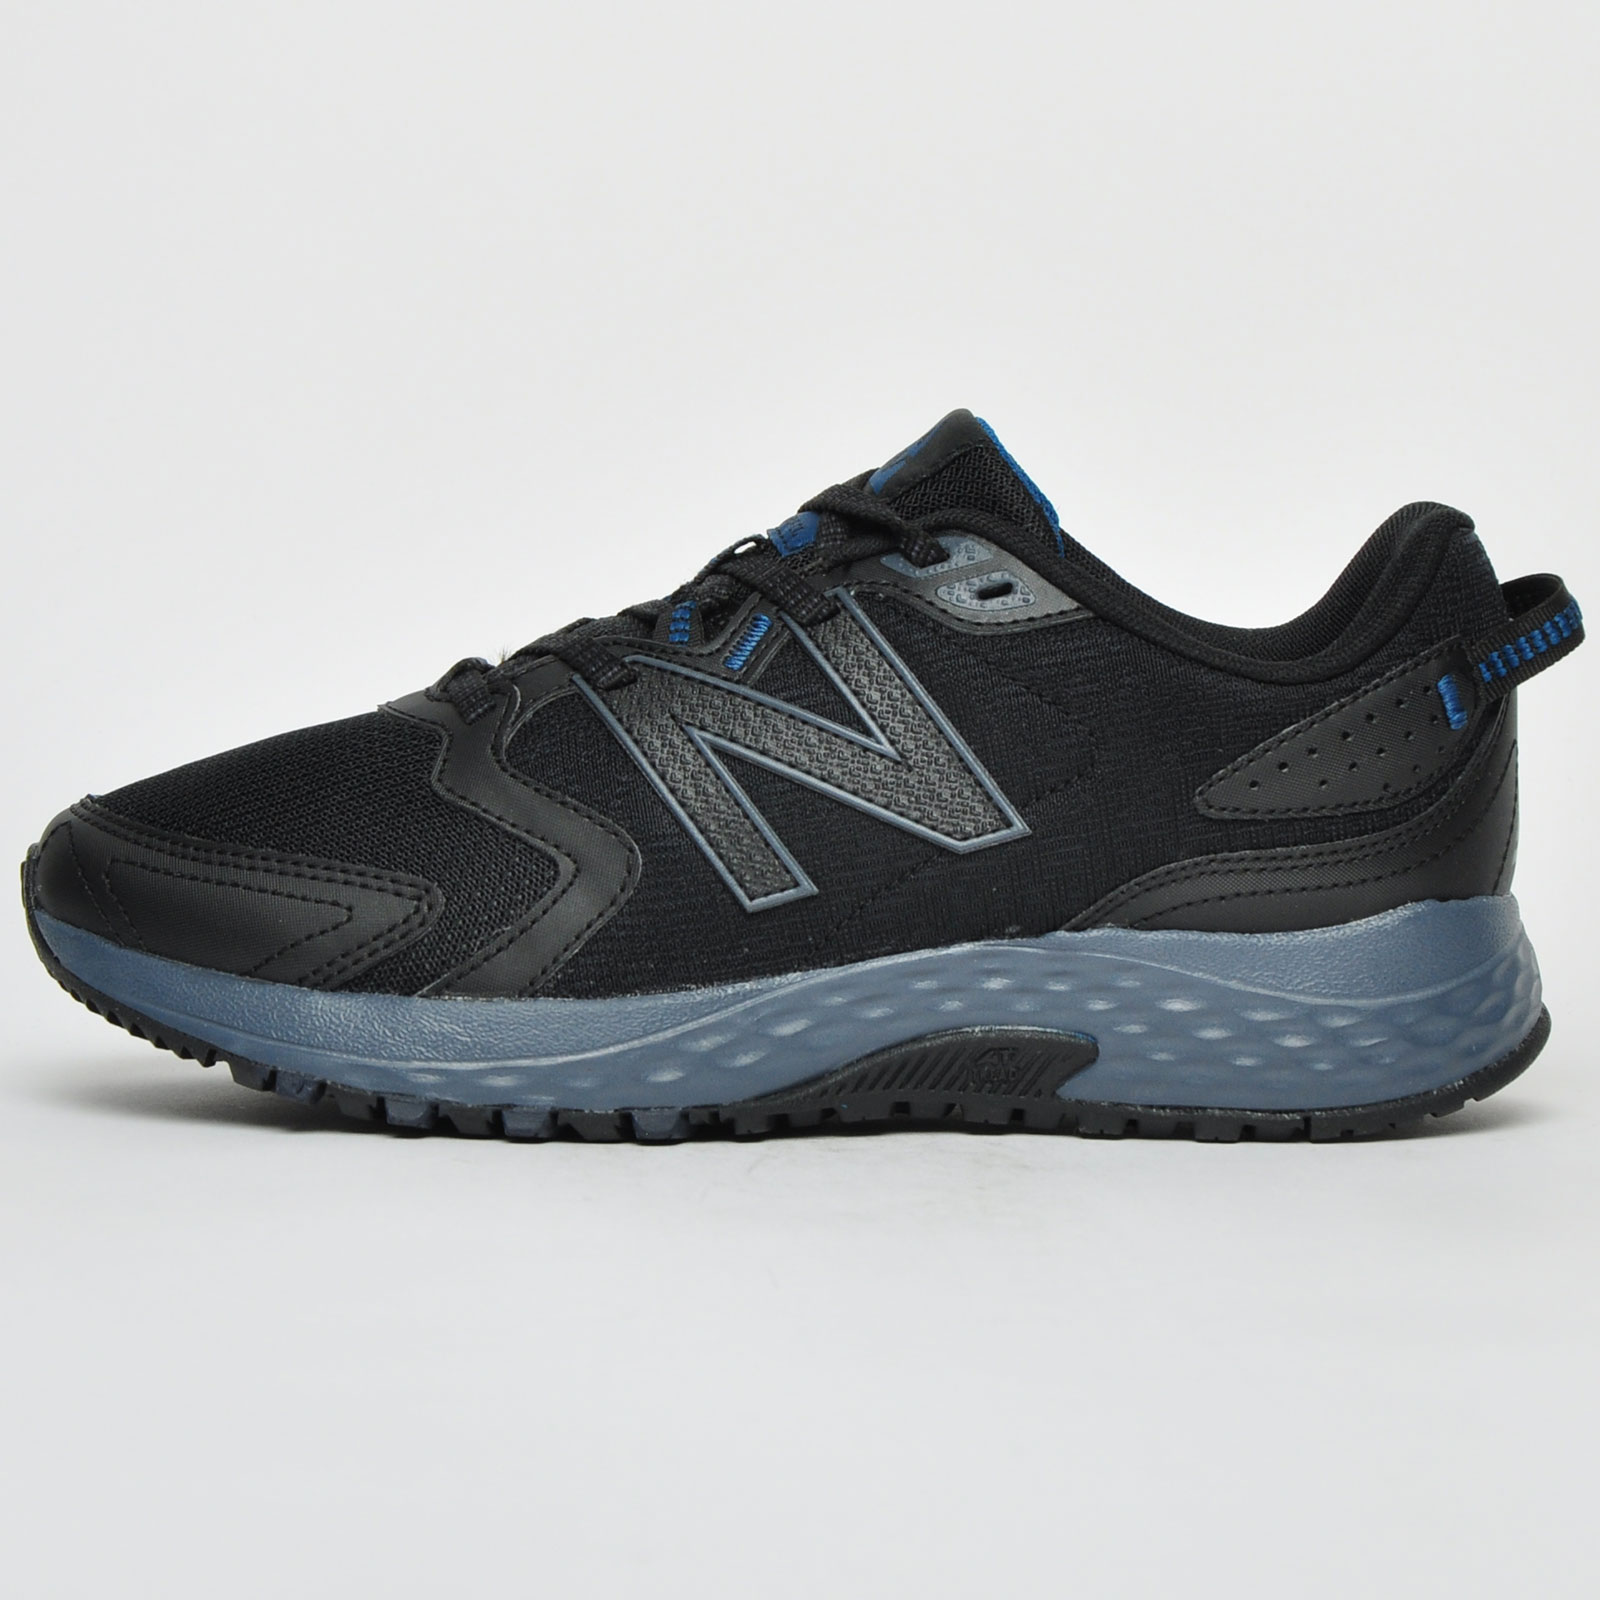 New Balance MT 410 v7 Men's All-Terrain Trail Running Shoes Black New ...